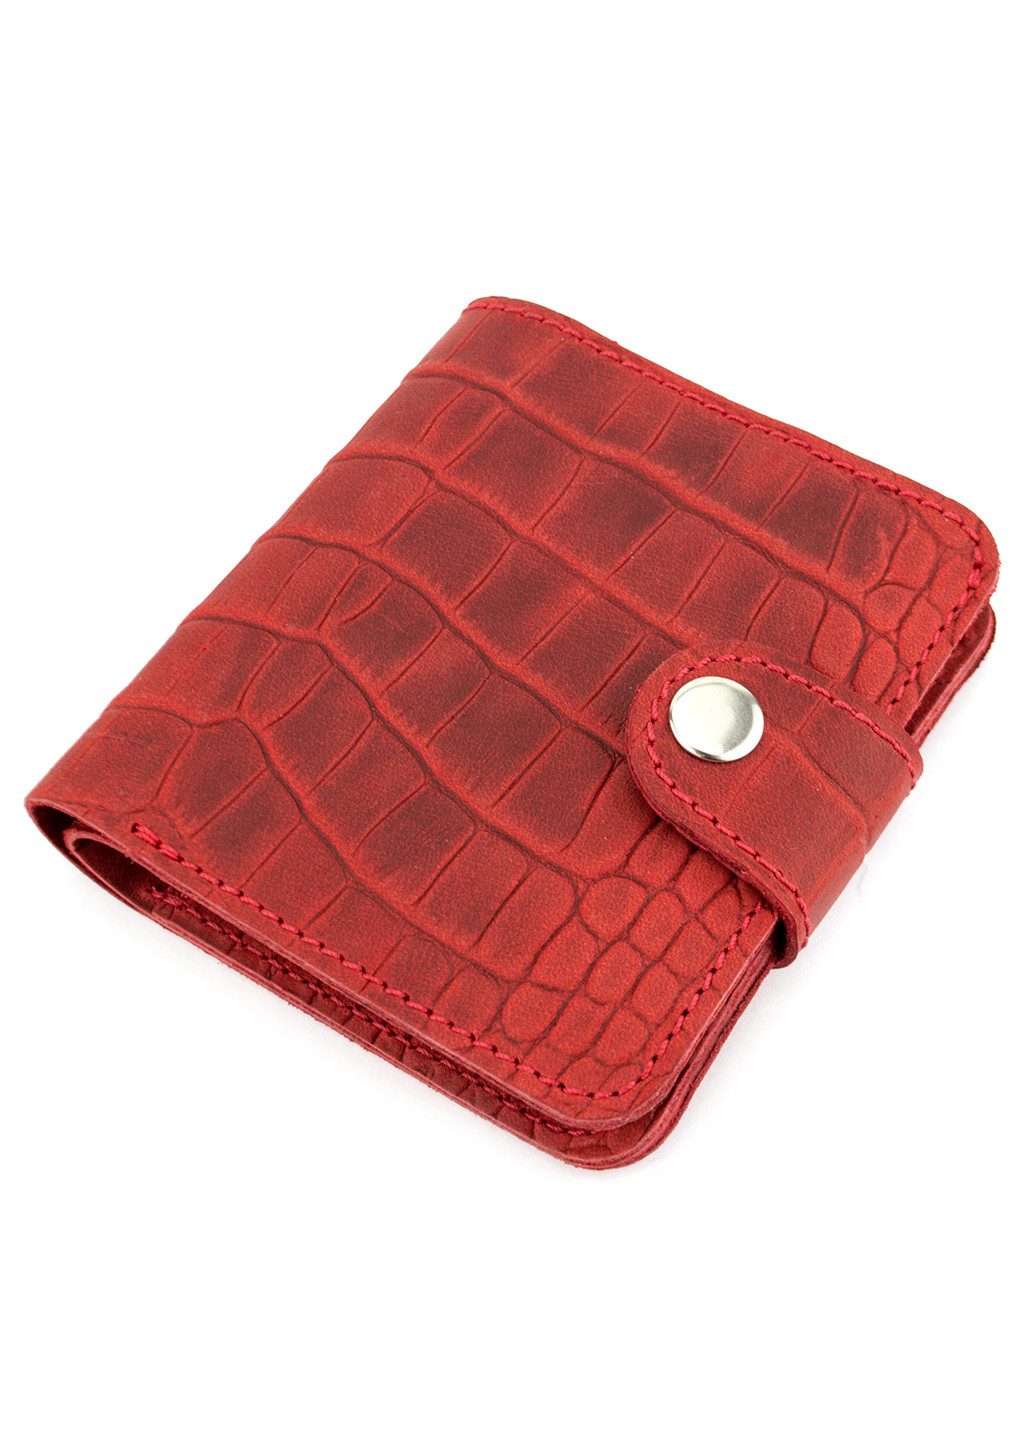 Подарунковий набір №39: Гаманець Софія + обкладинка на паспорт + обкладинка ID паспорт (червоний крокодил) HandyCover однотонні червоні